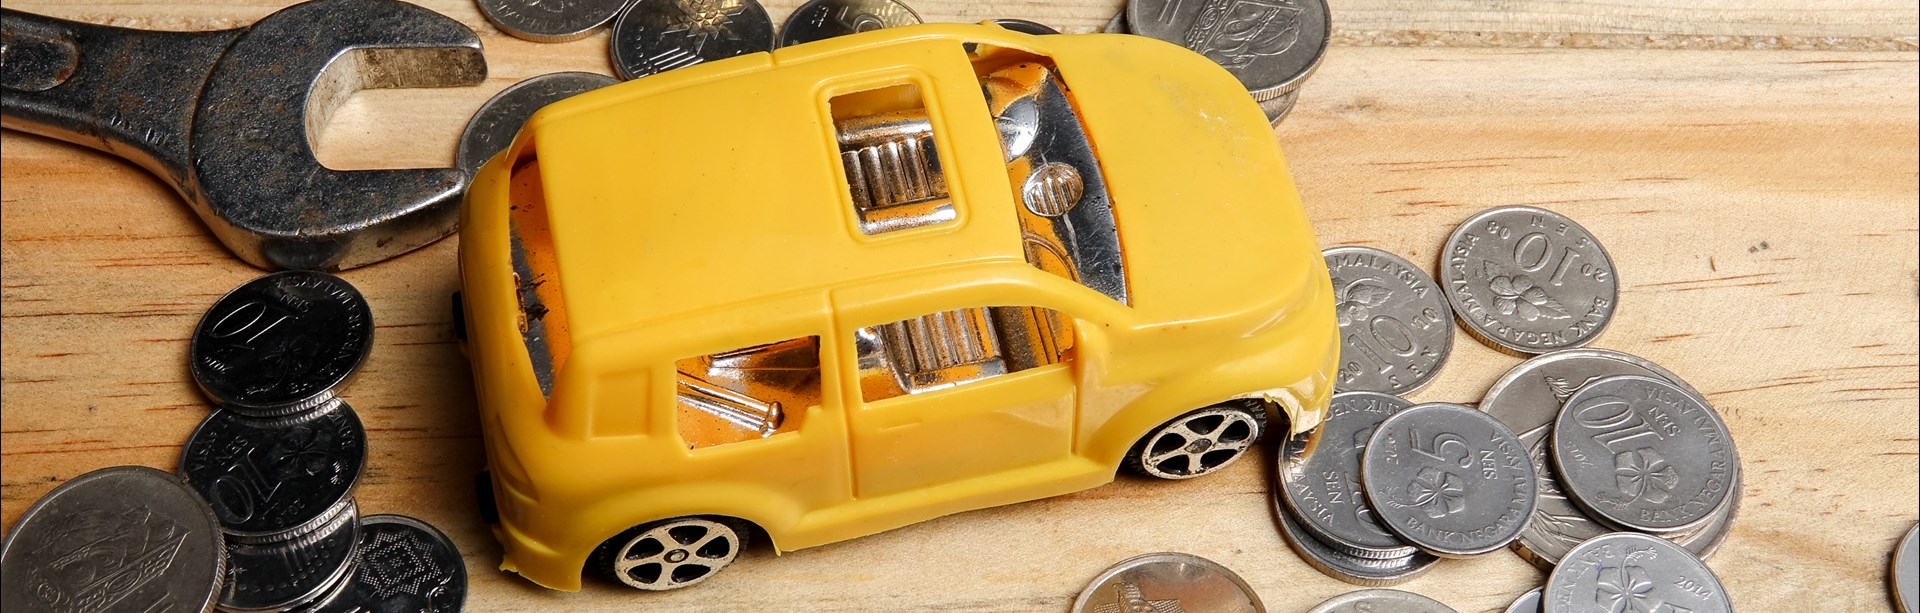 Gul leksaksbil i plast parkerad på furubord med verktyg och internationella mynt strödda omkring sig.